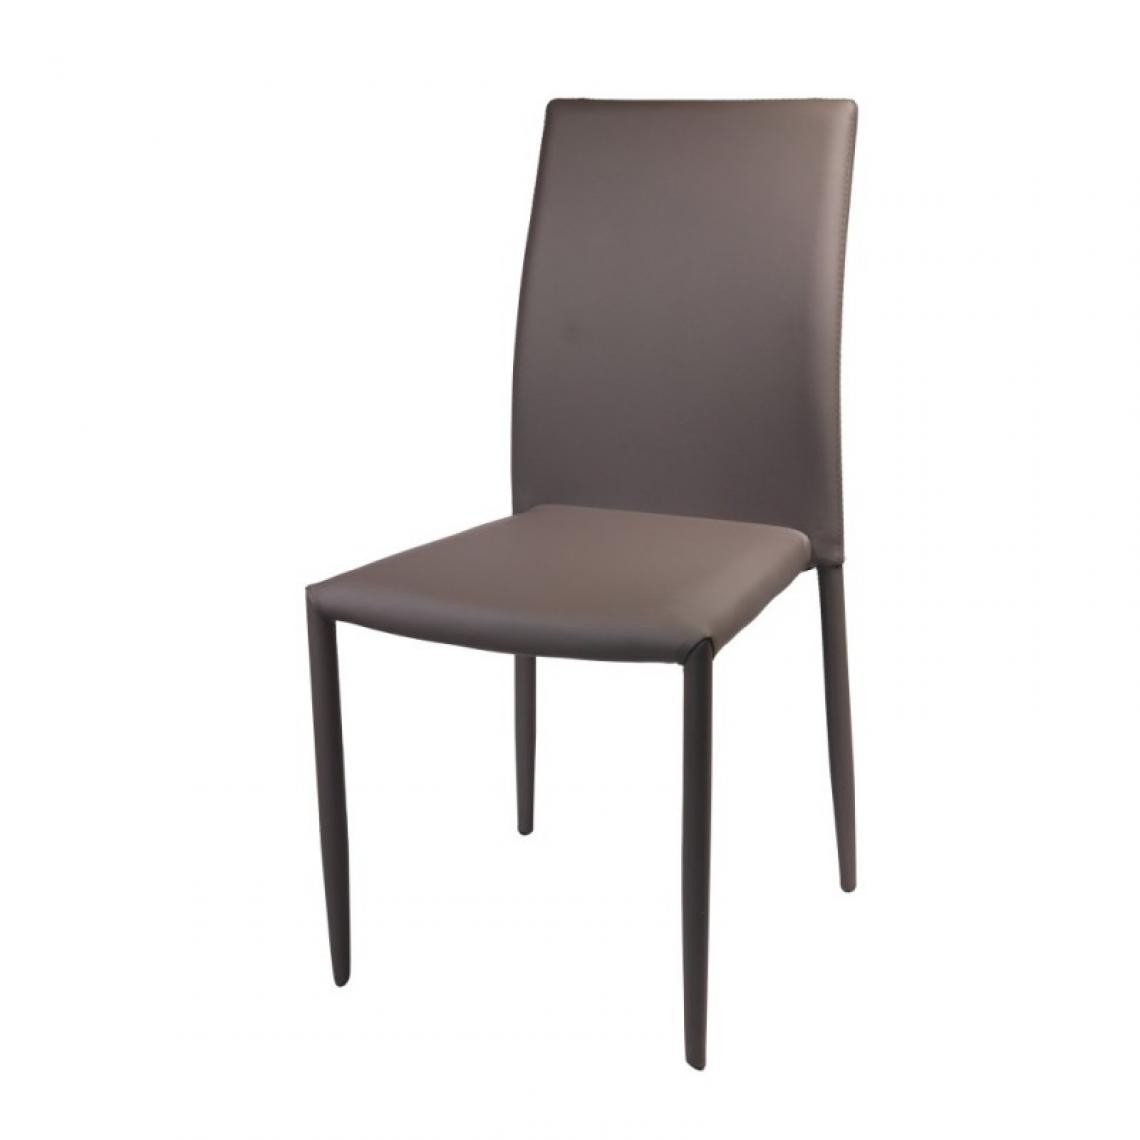 Webmarketpoint - Chaise de salon Kristin gris tourterelle 53 x 44 x 90 h - Chaises